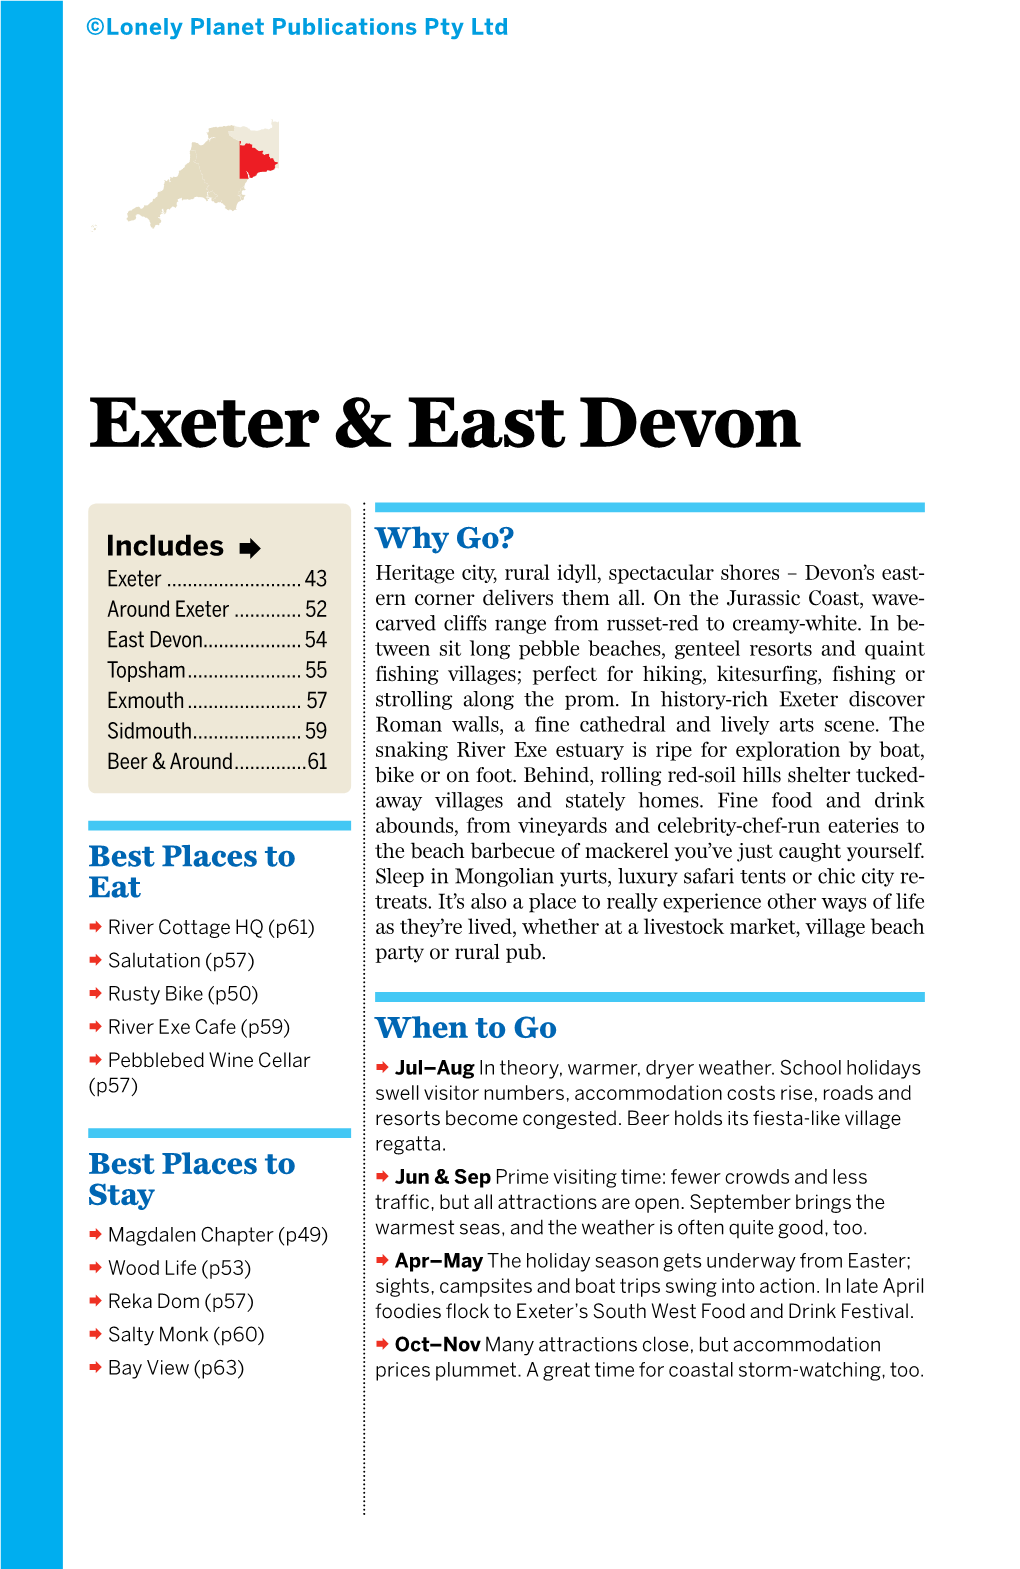 Exeter & East Devon